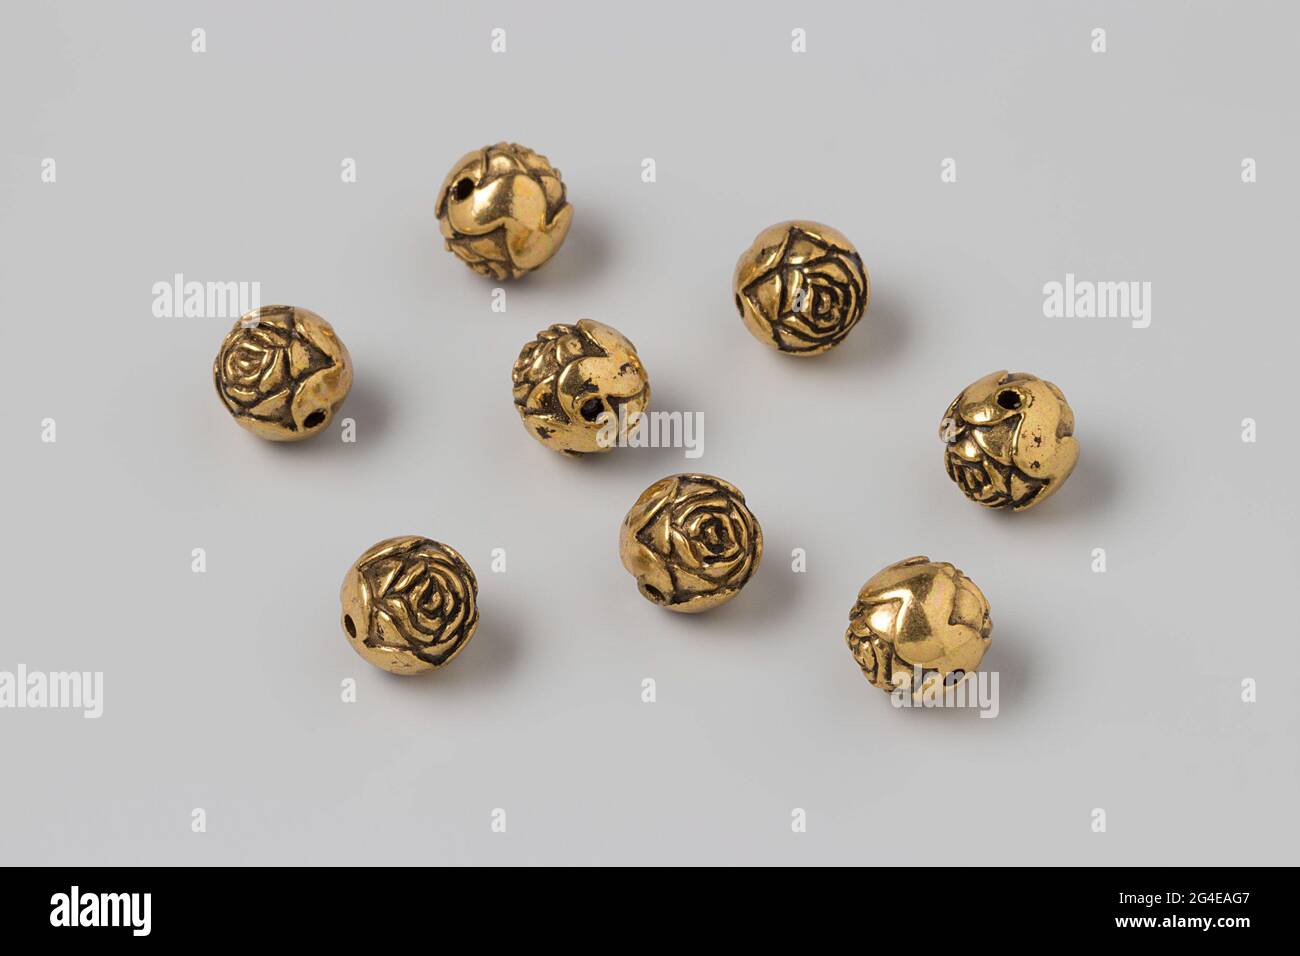 Botones de cobre, en forma de una ronda rose, con dos pequeños orificios  para fijación., anónimo, Holanda (posiblemente), c. 1840 - c. 1850, geheel,  forja, d 1 cm Fotografía de stock - Alamy